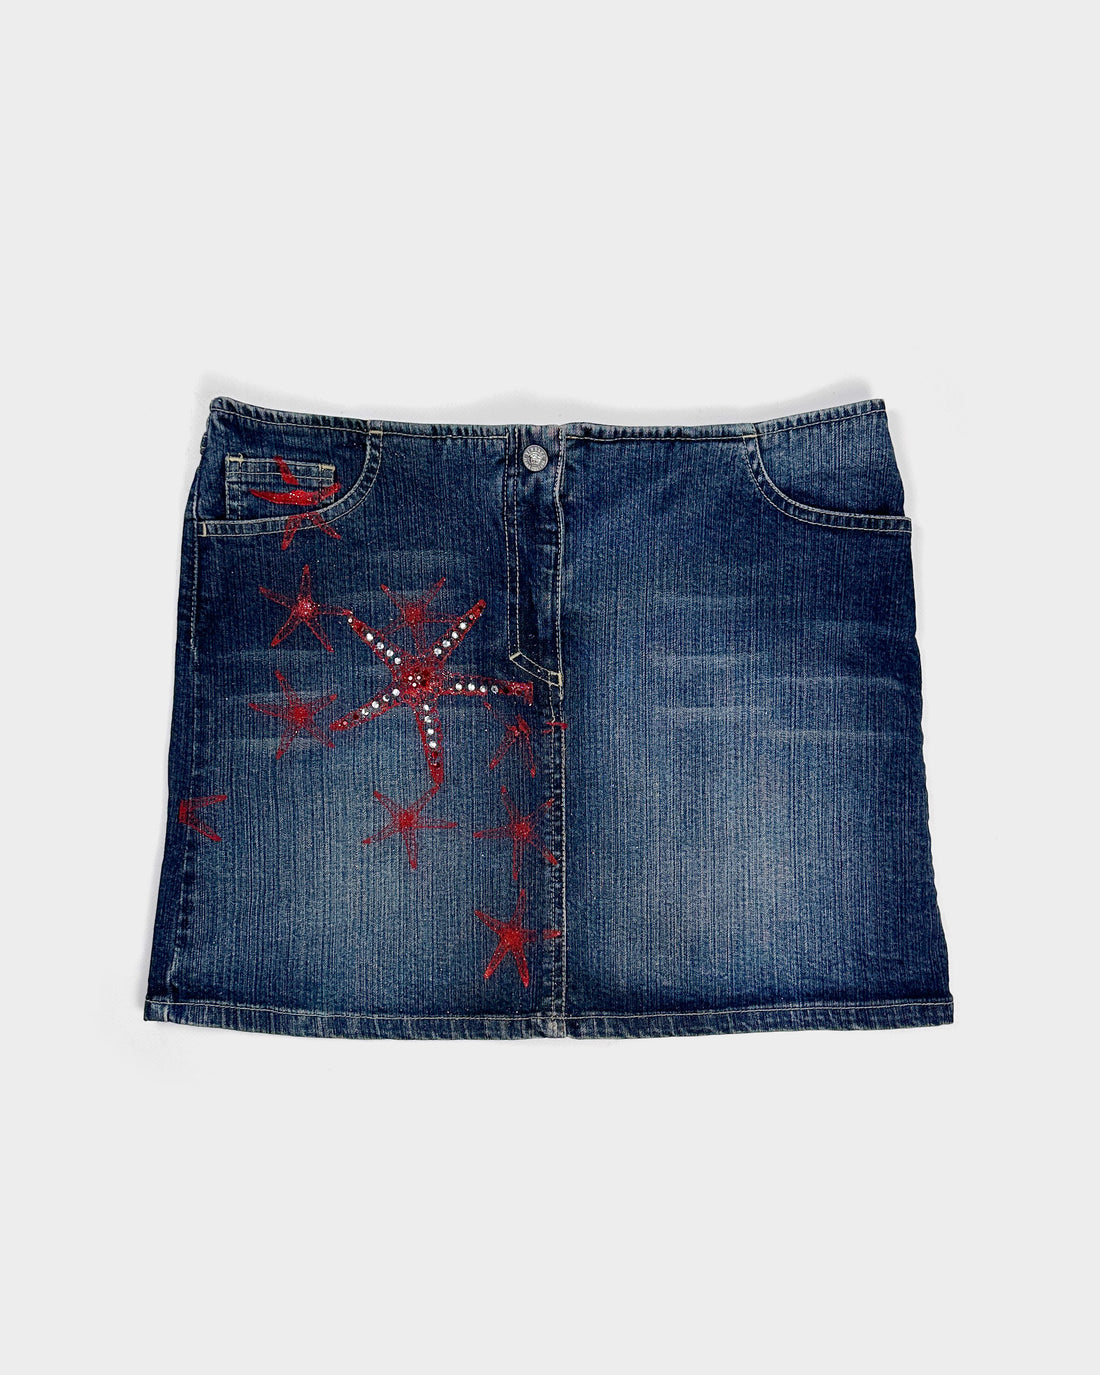 Versace Starfish Denim Skirt 2000's